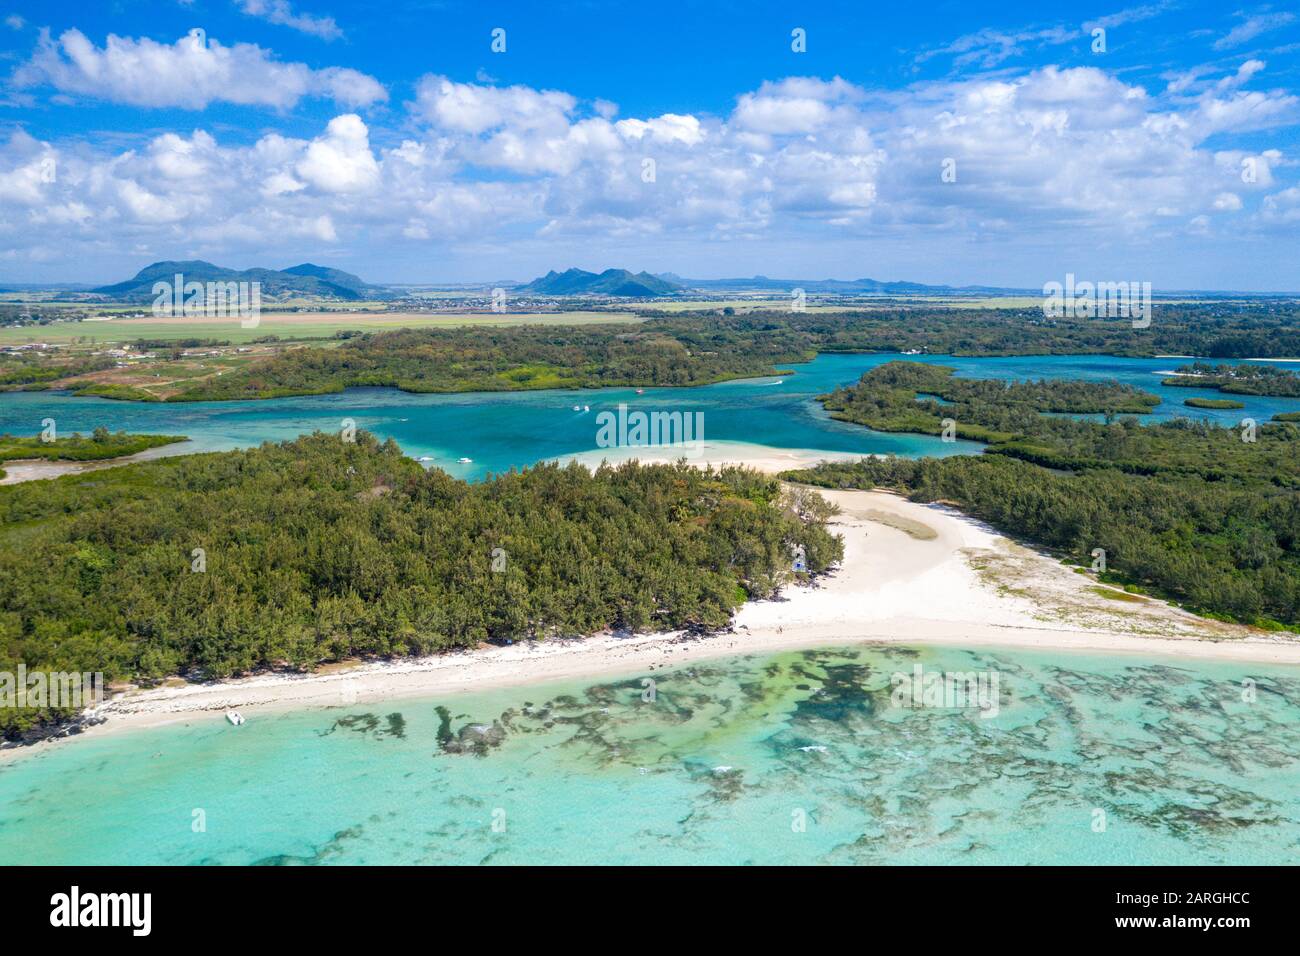 Aérien par drone de plage de sable blanc avec mer turquoise entouré d'arbres tropicaux, Ile aux cerfs, Flacq, Maurice, Océan Indien, Afrique Banque D'Images